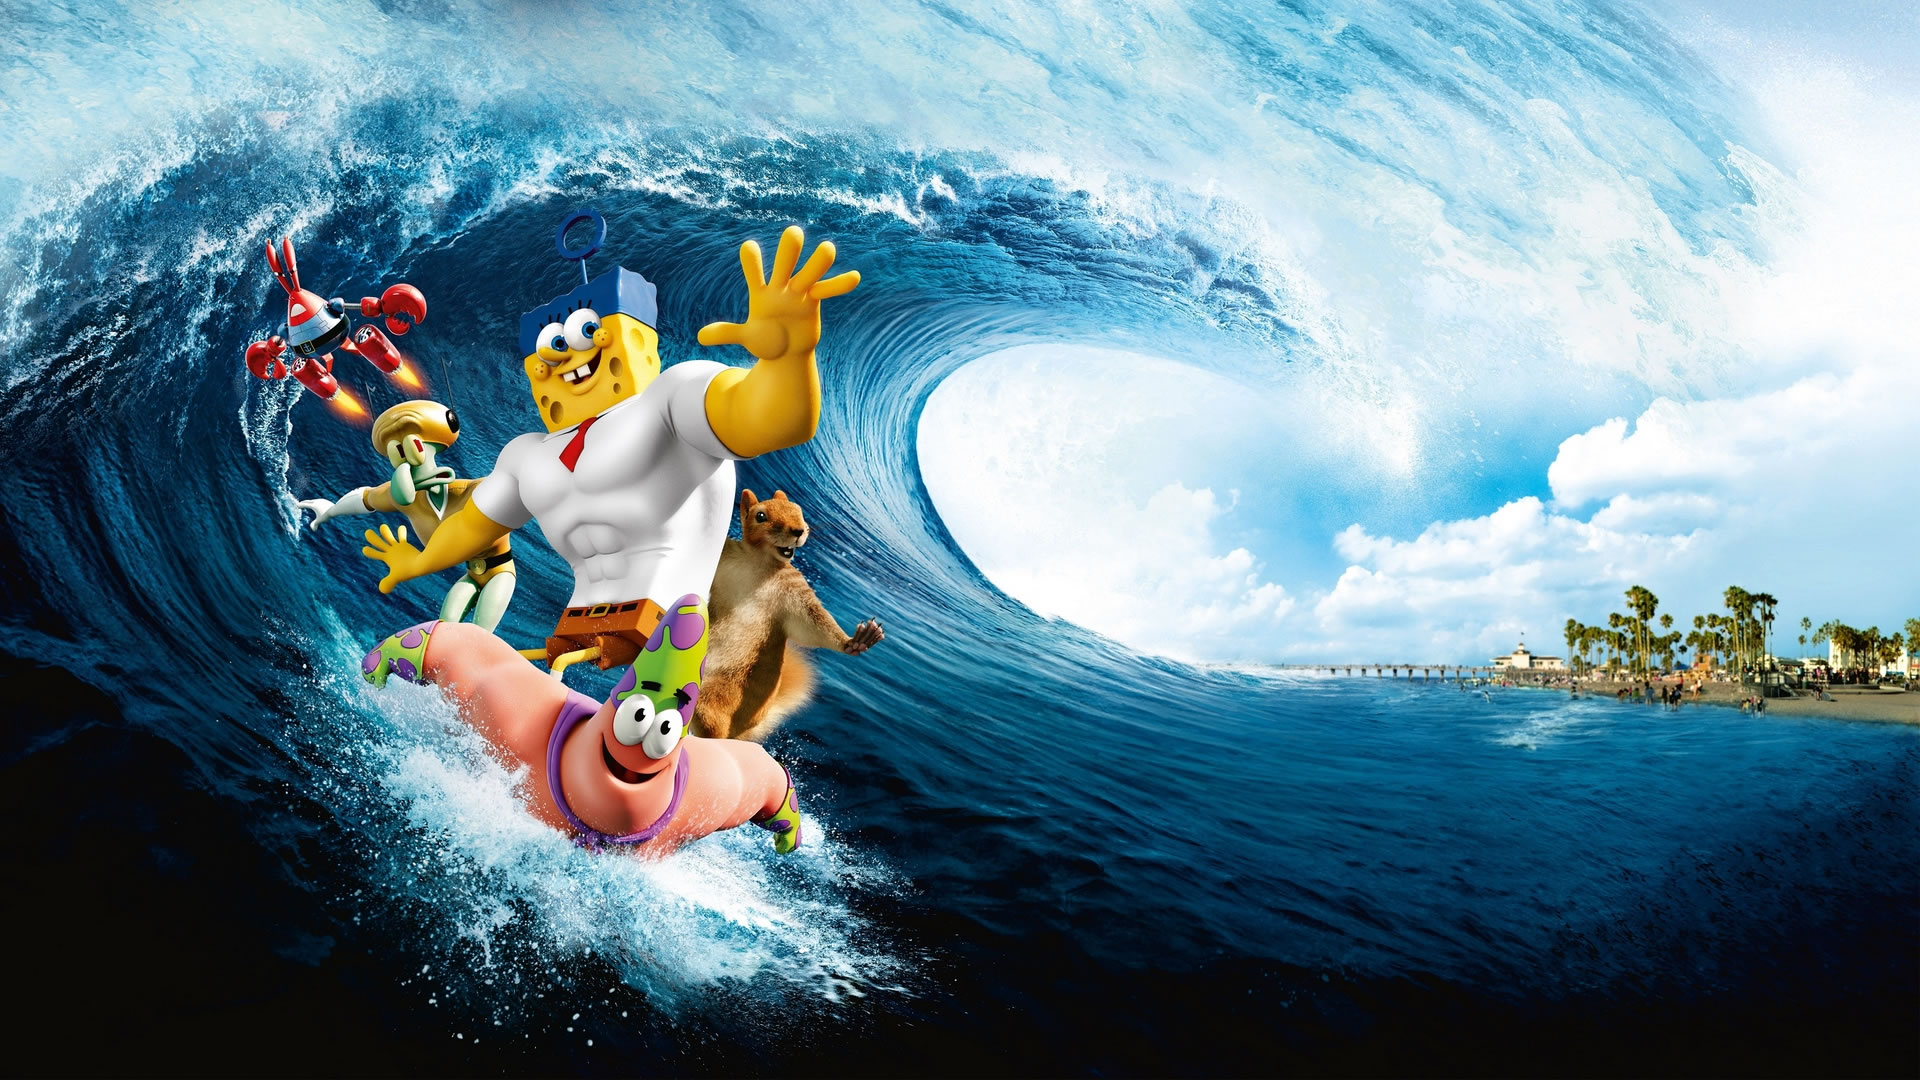 download wallpaper: Spongebob Movie wallpaper